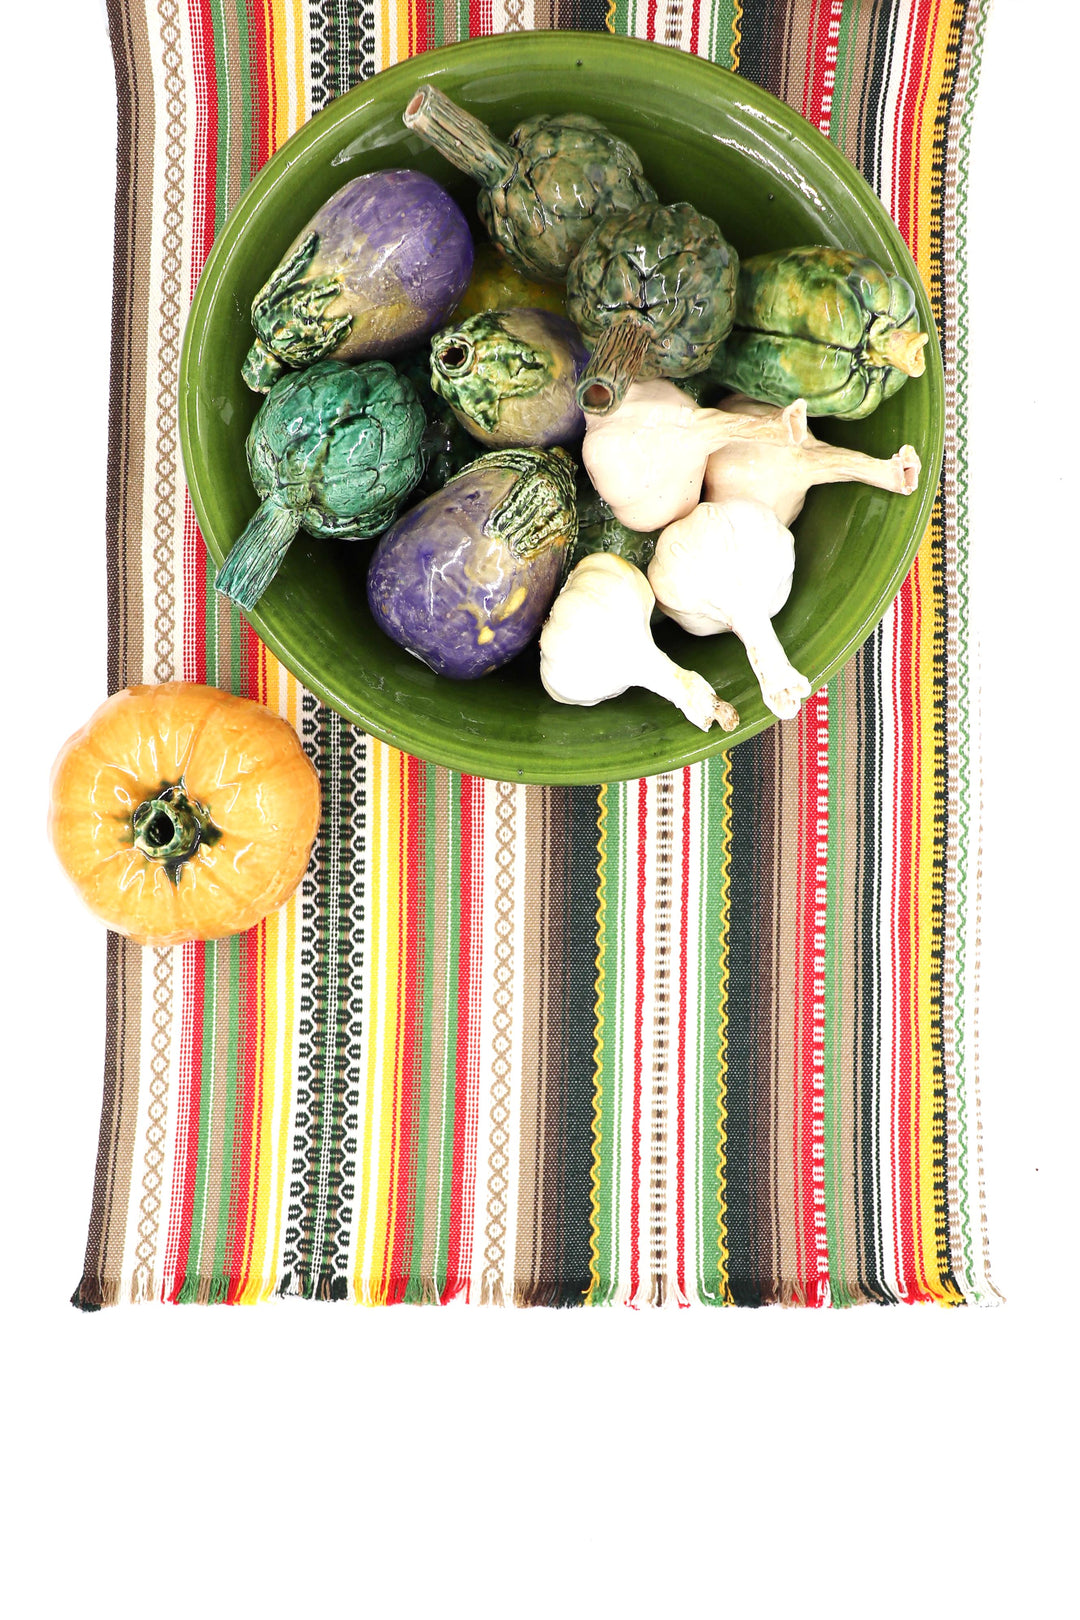 Camino de mesa alpujarra mix color composicion verduras